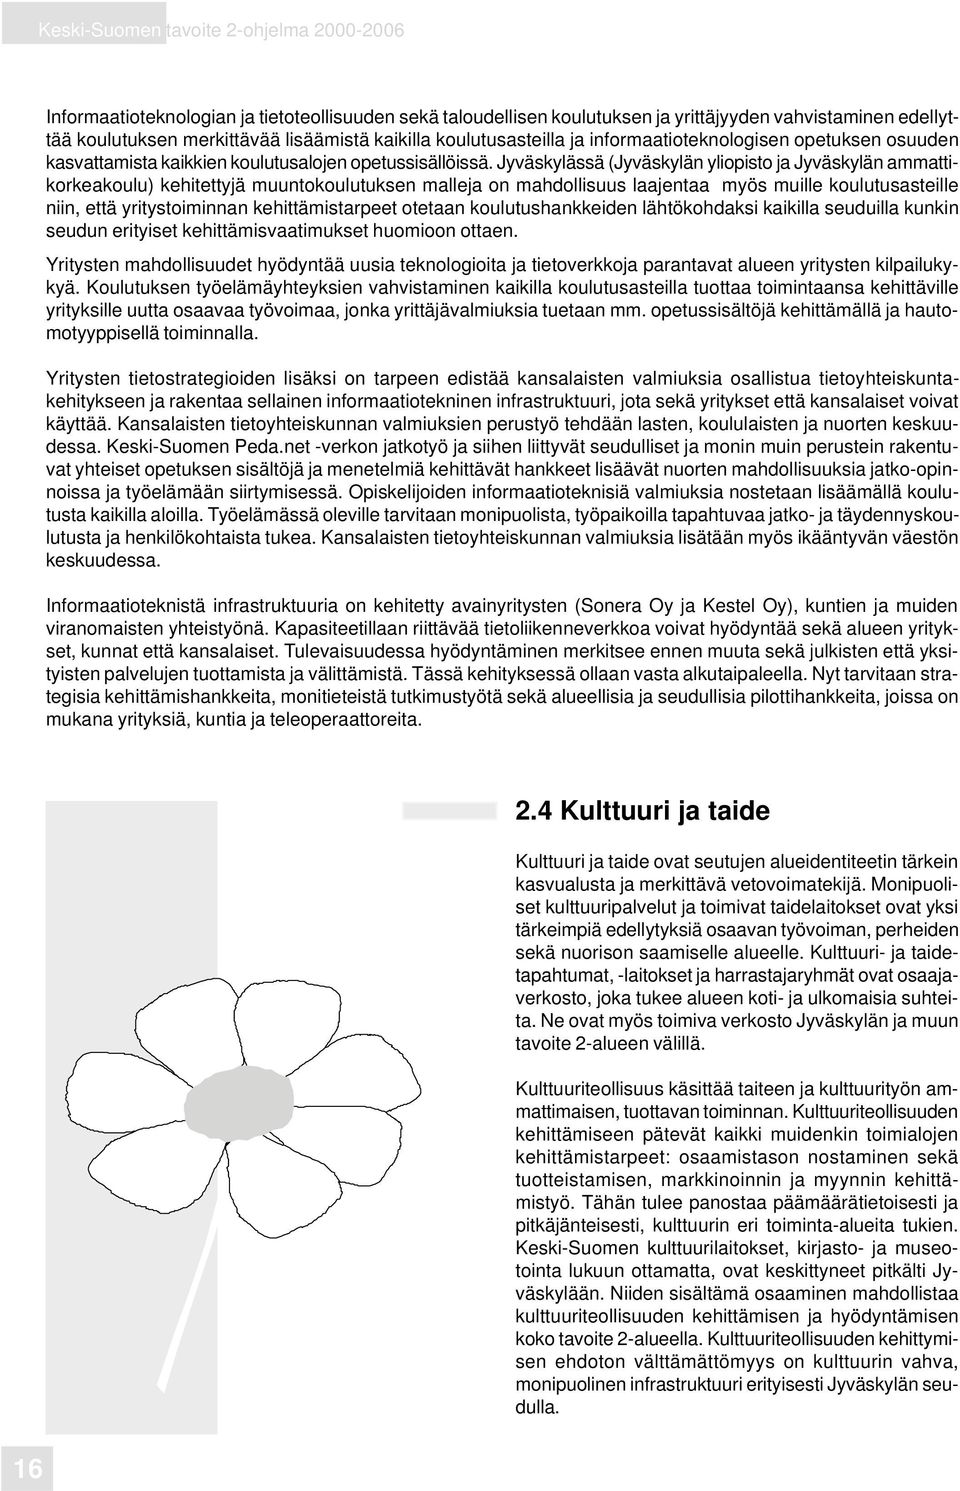 Jyväskylässä (Jyväskylän yliopisto ja Jyväskylän ammattikorkeakoulu) kehitettyjä muuntokoulutuksen malleja on mahdollisuus laajentaa myös muille koulutusasteille niin, että yritystoiminnan